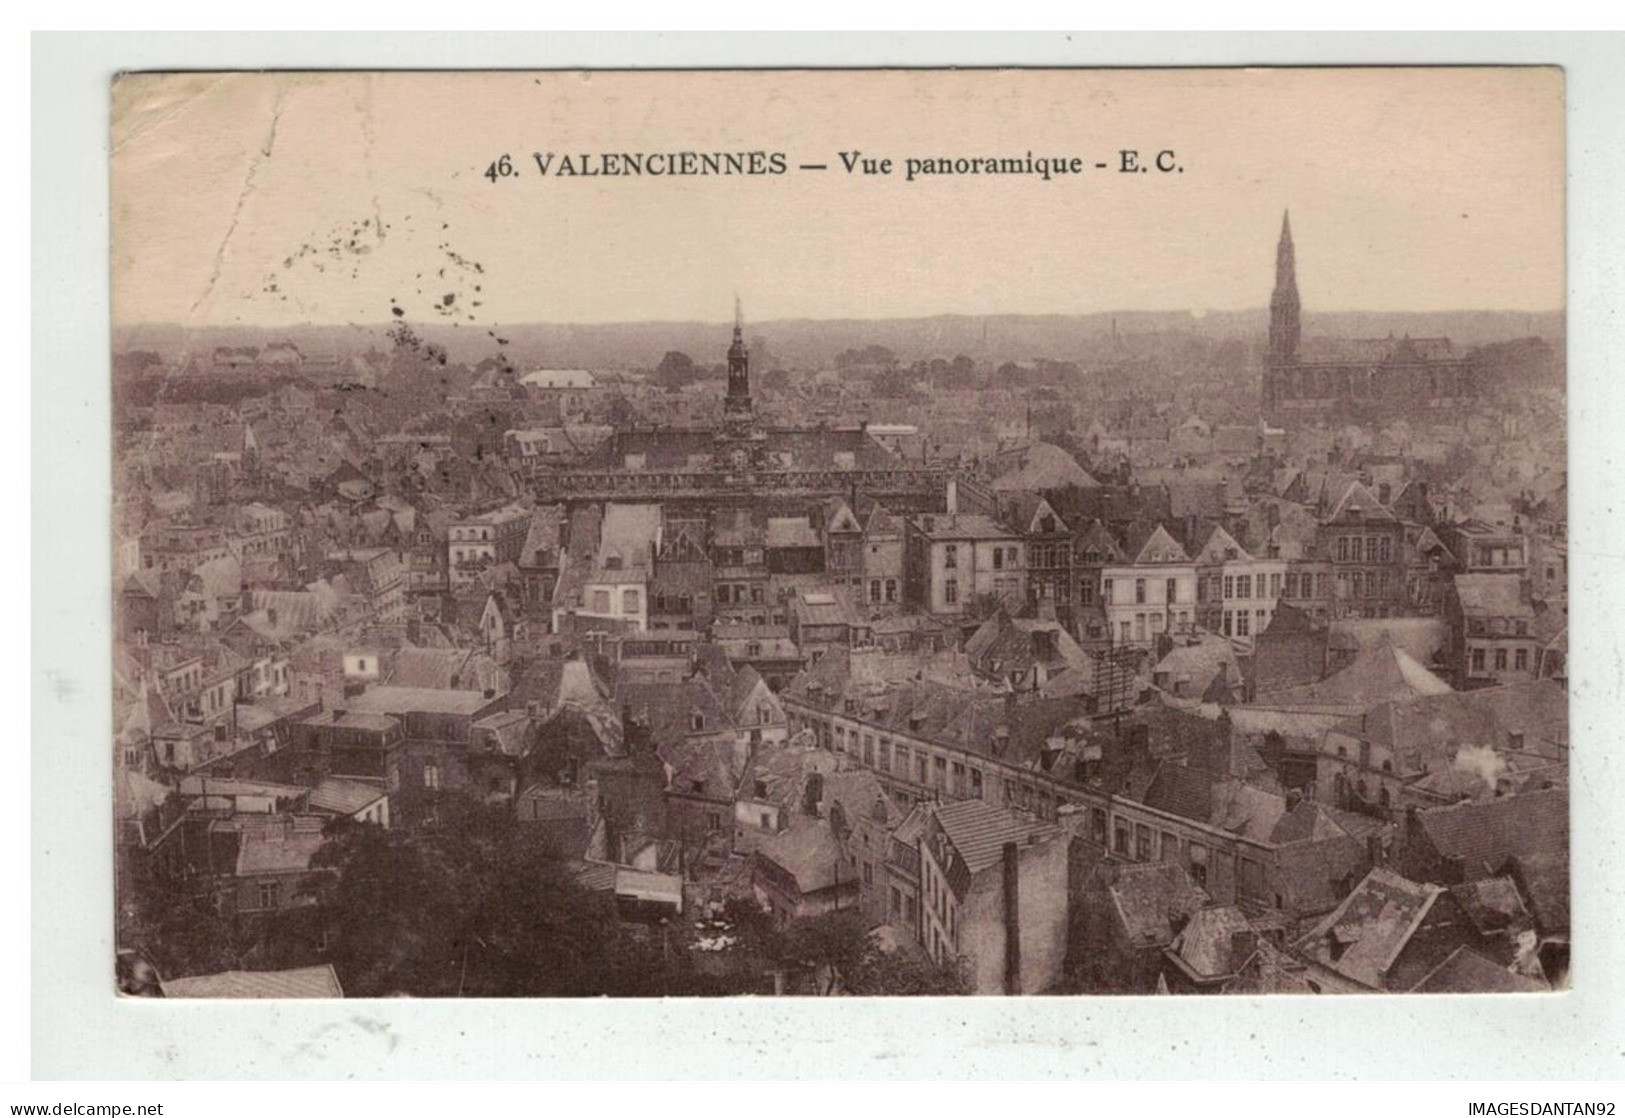 59 VALENCIENNES VUE PANORAMIQUE NÂ° 46 - Valenciennes